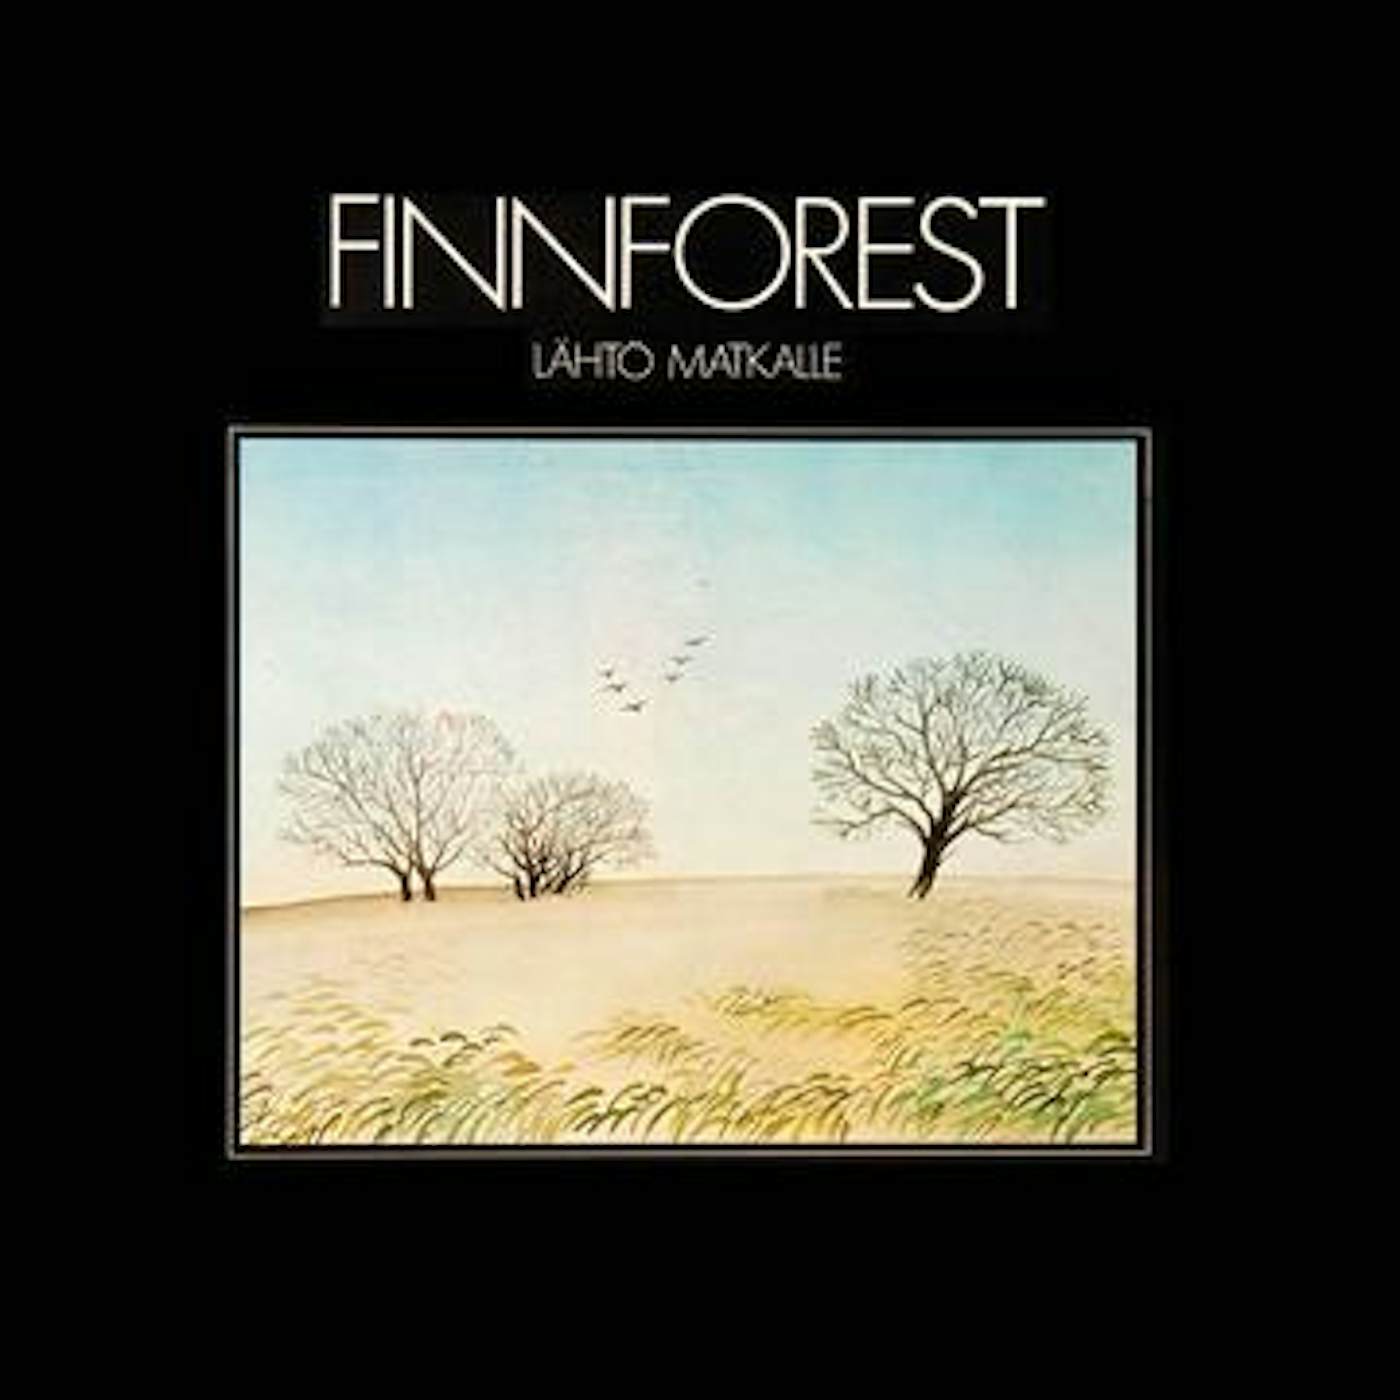 Finnforest Lahto Matkalle Vinyl Record